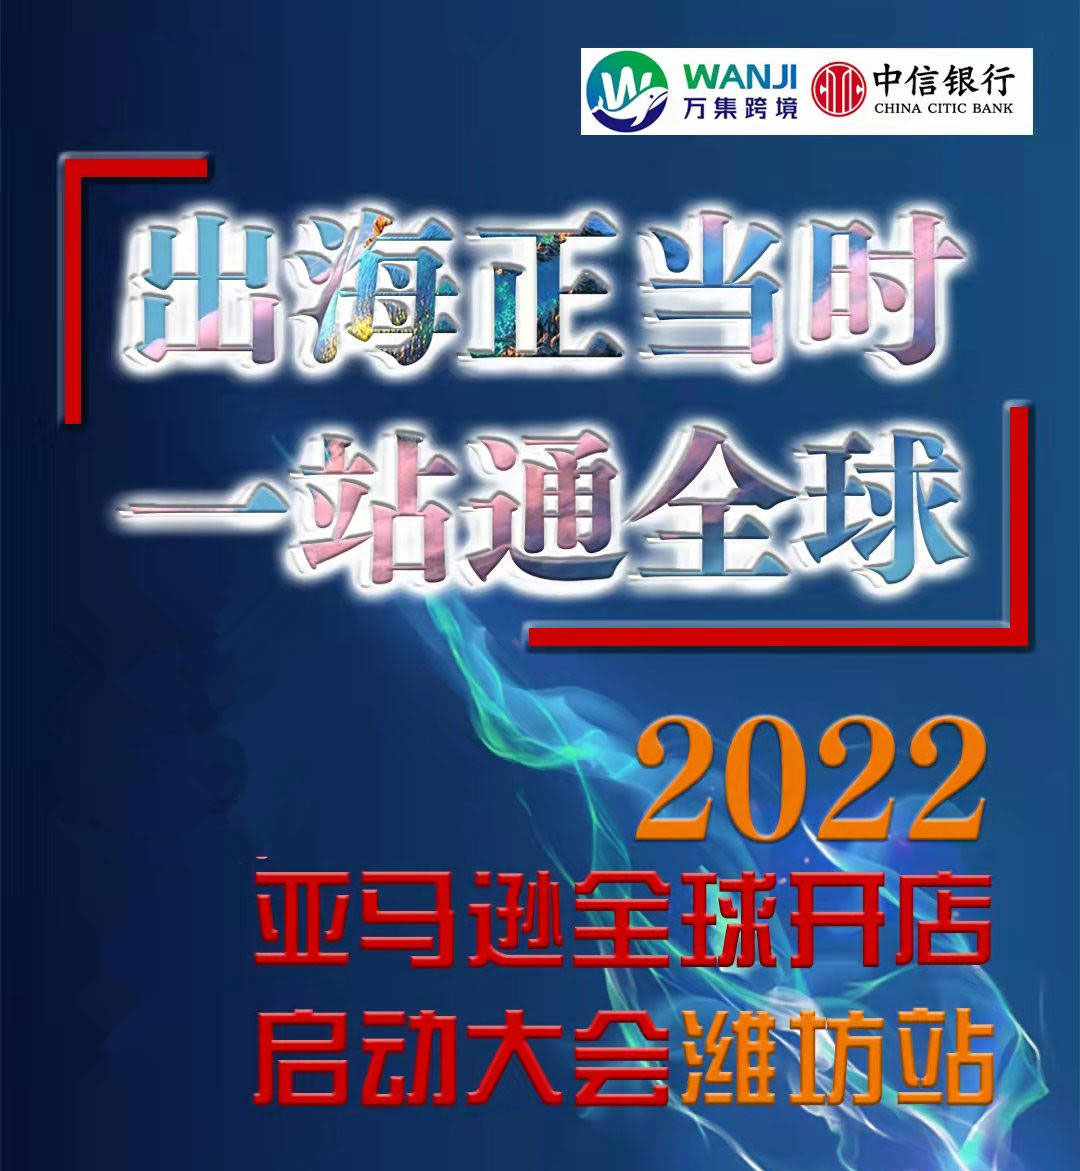 2022年潍坊亚马逊全球开店启动大会将在10月29日启动